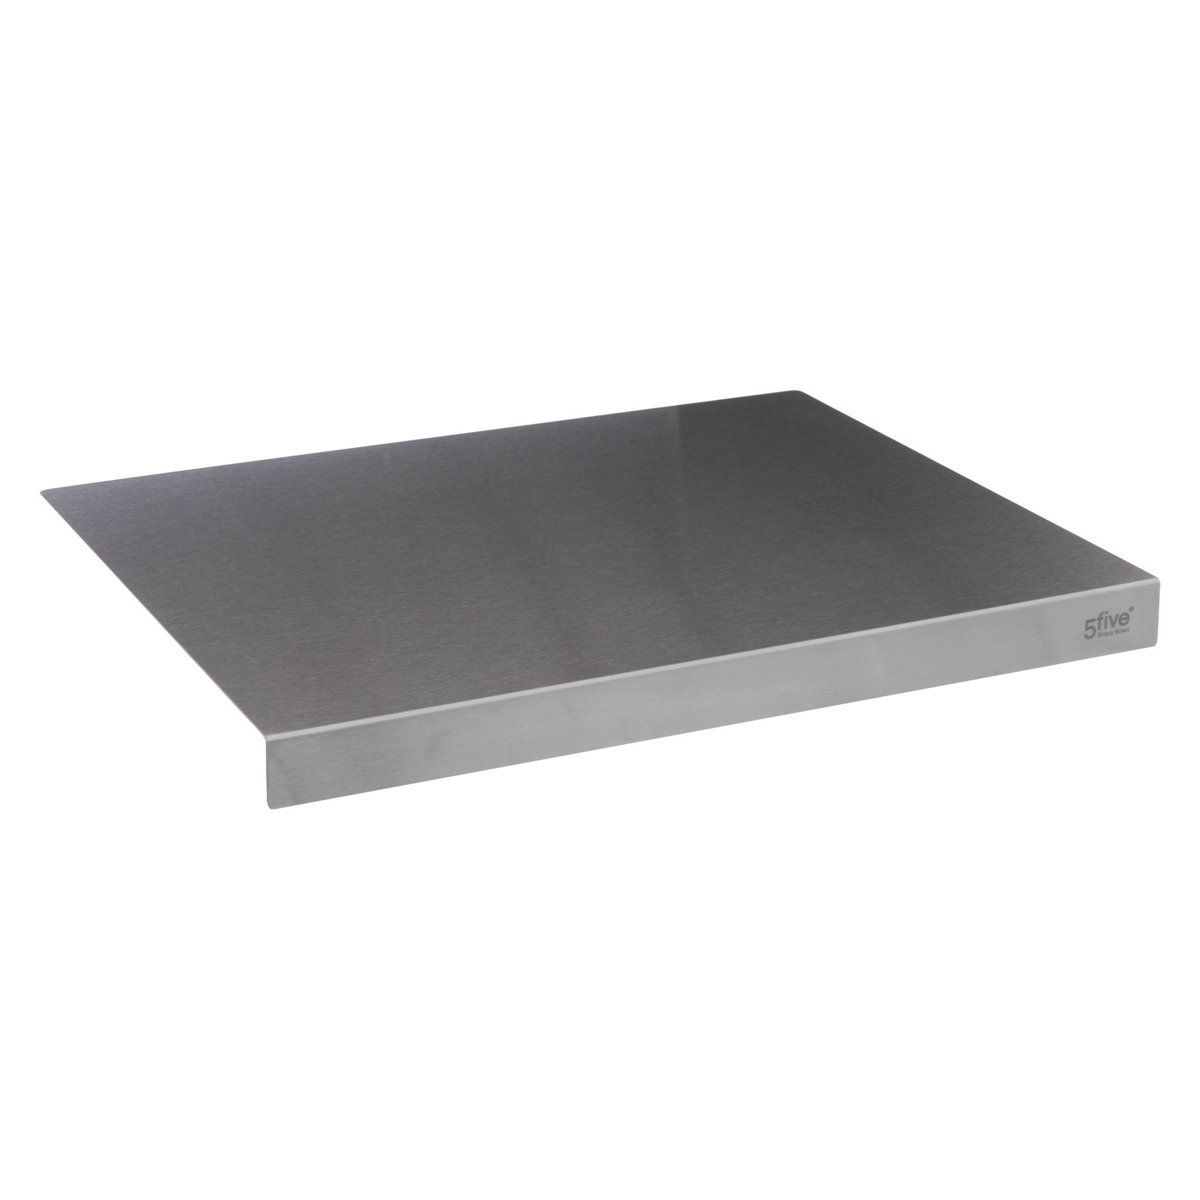 5five Simply Smart Kuchyňská deska z nerezové oceli, 50 x 40 cm - EMAKO.CZ s.r.o.